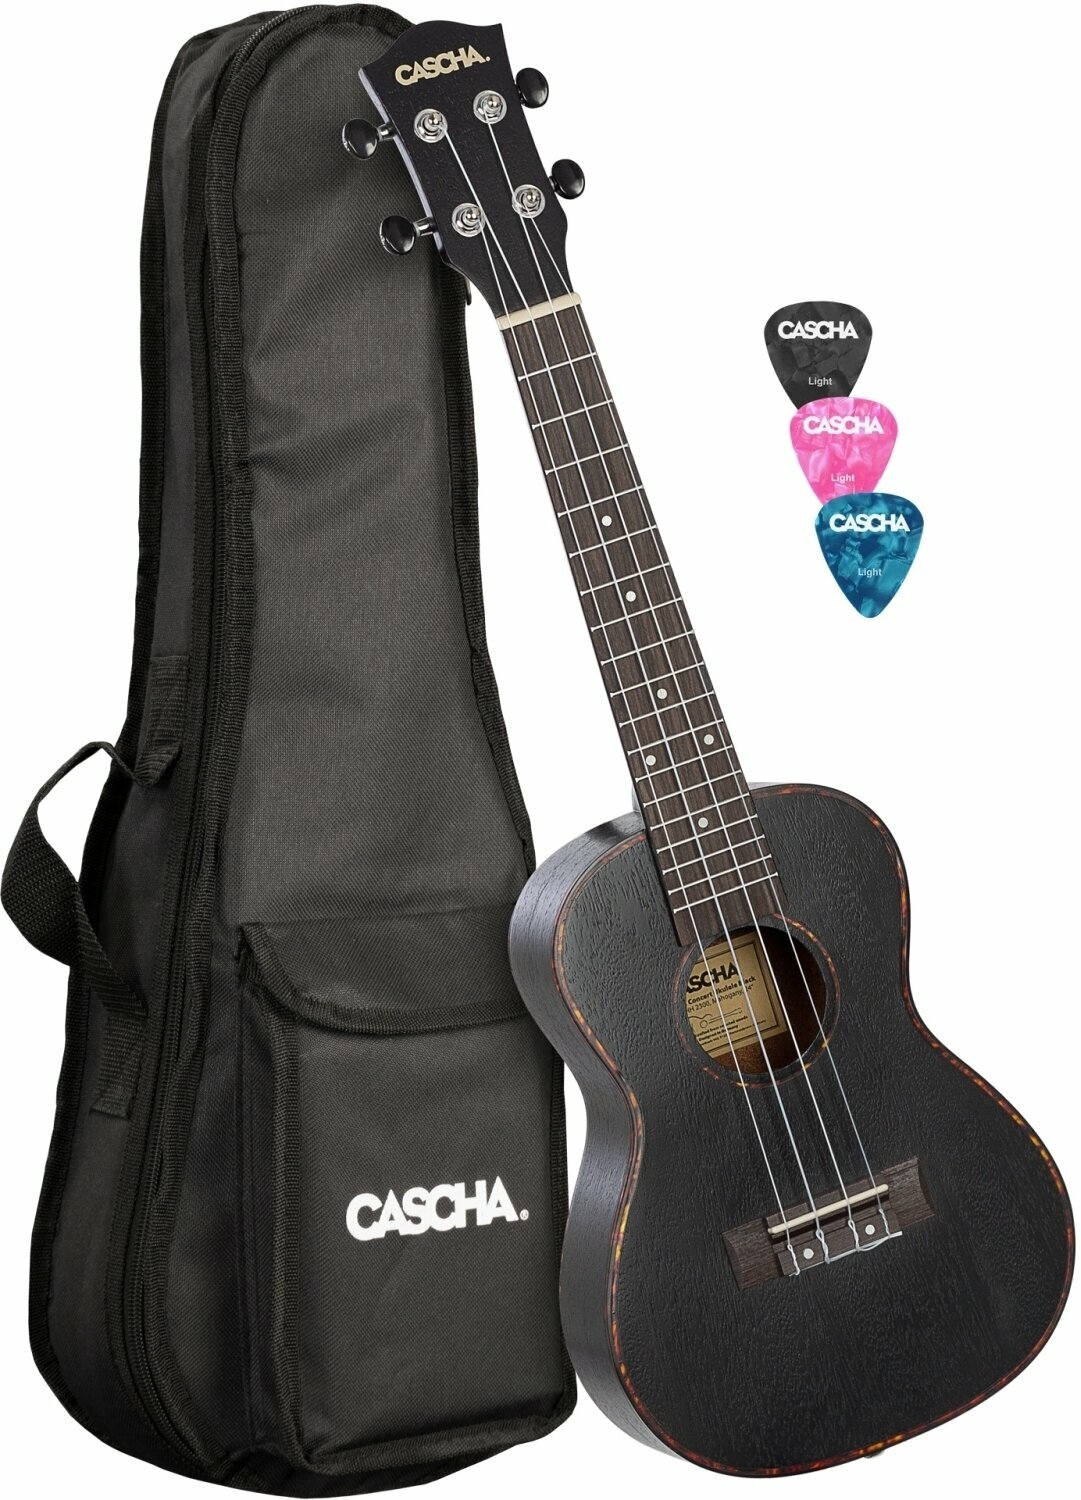 Koncertní ukulele Cascha HH 2300L Koncertní ukulele Black